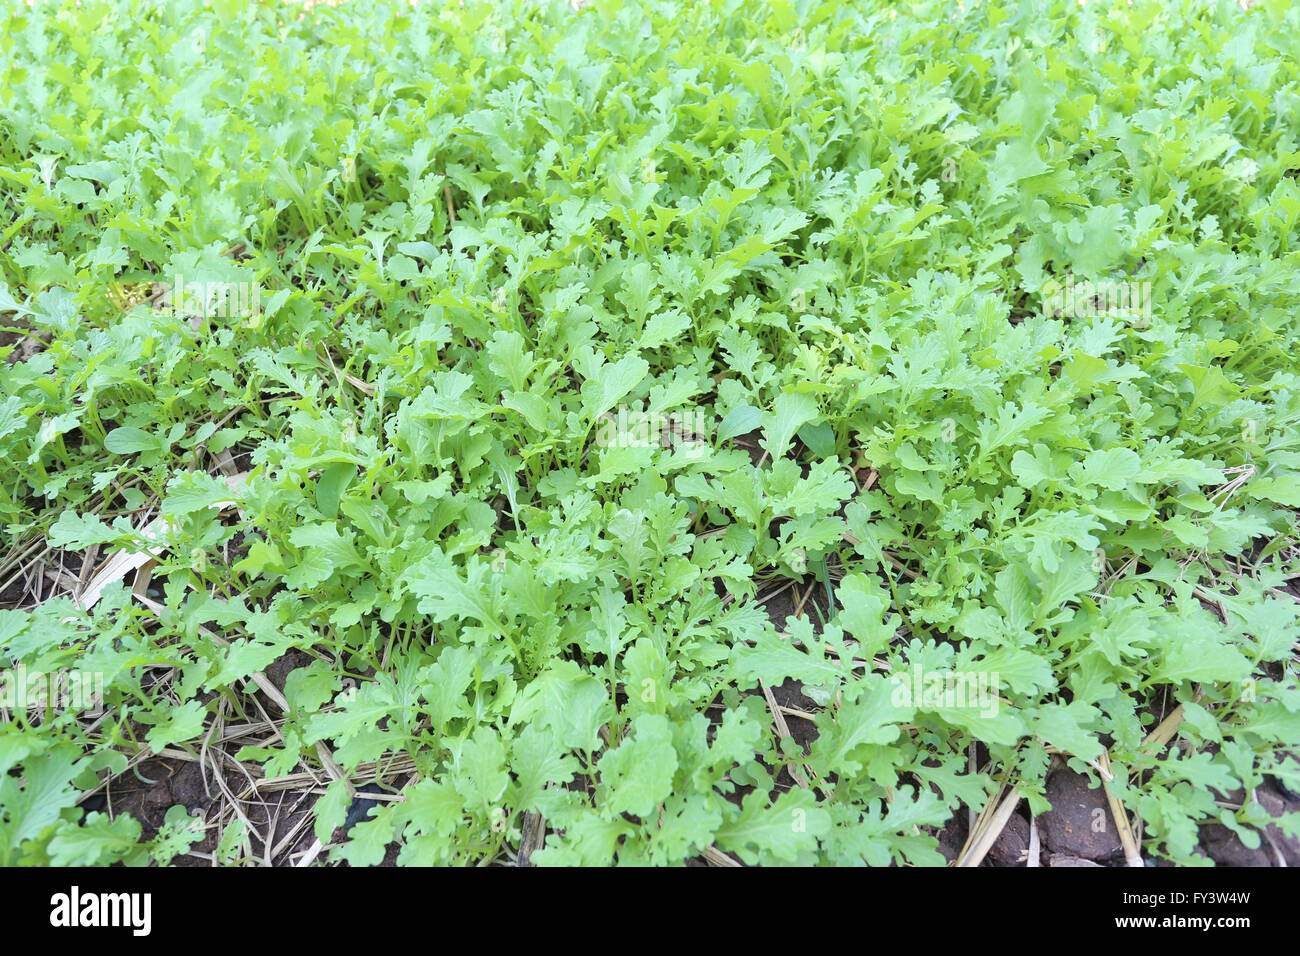 Retoño verde de hortalizas en el jardín,lechuga era de alrededor de un mes. Foto de stock